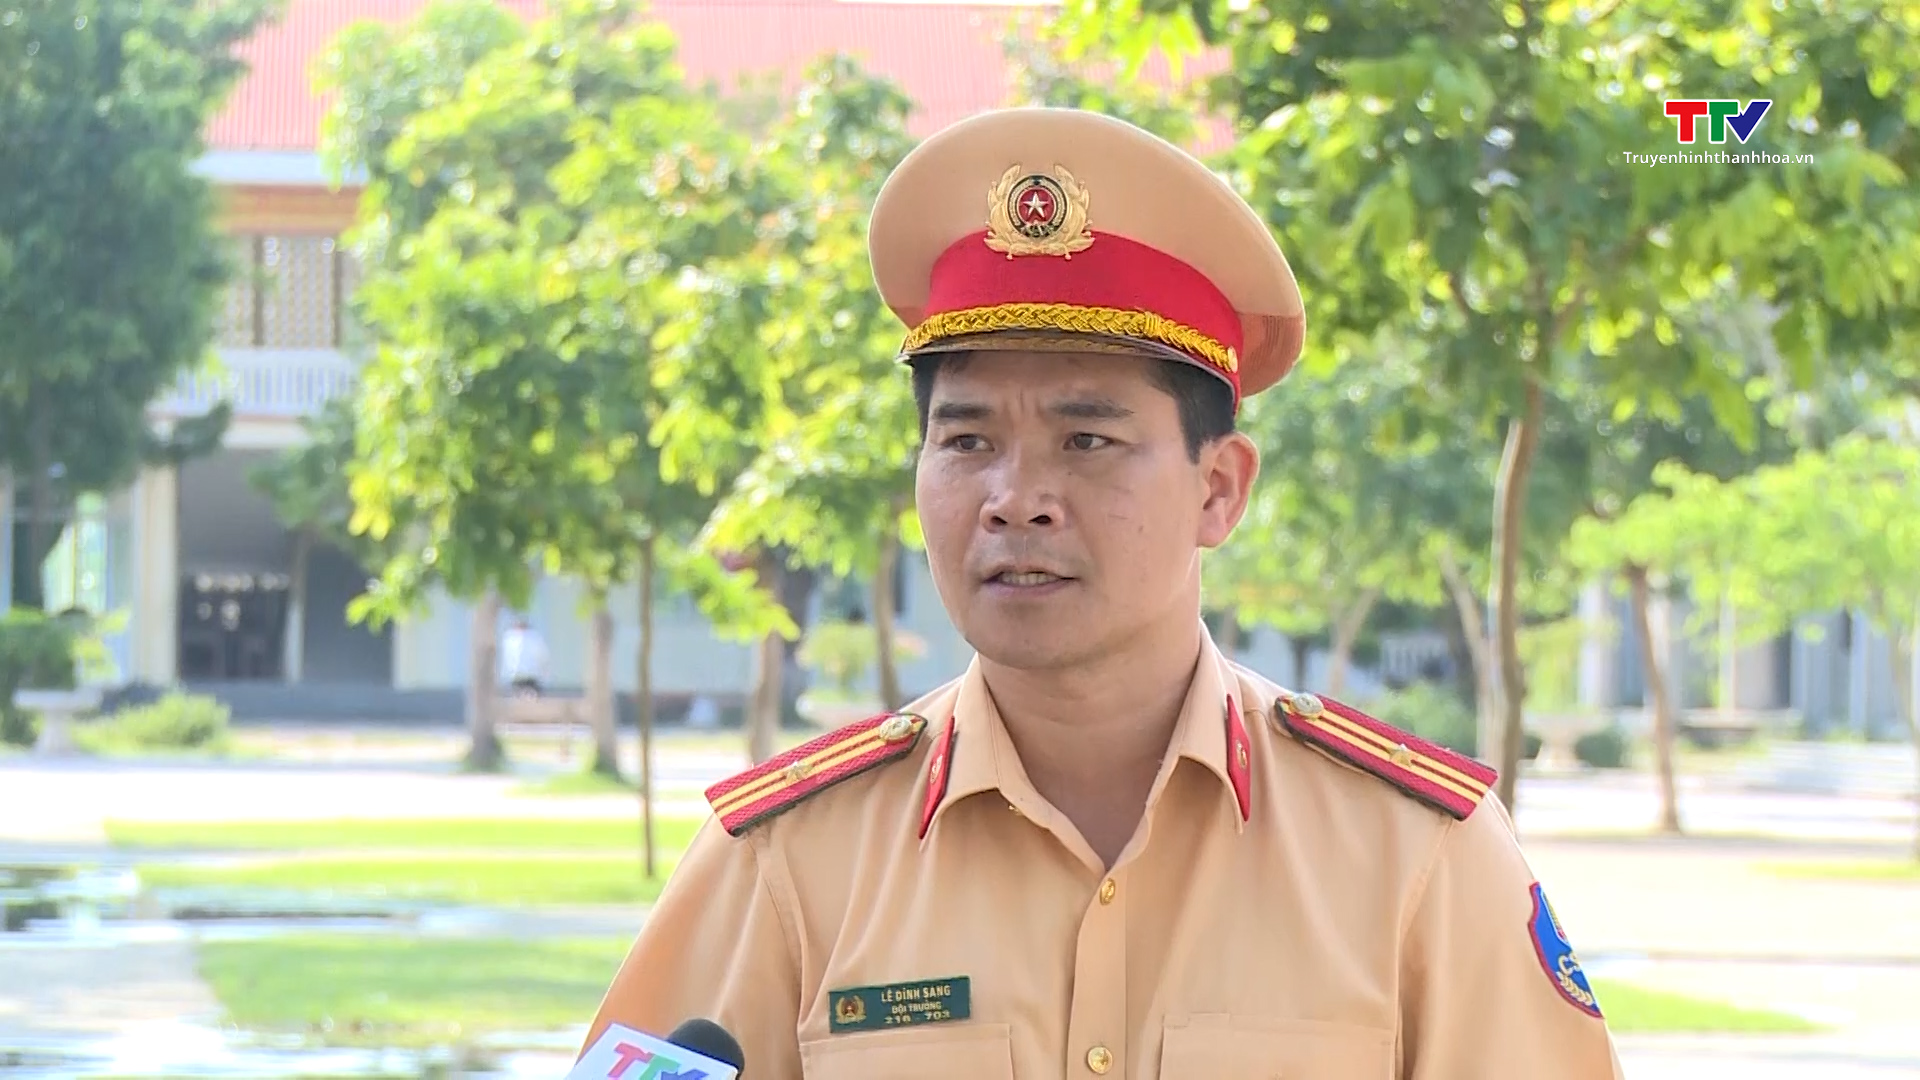 Huyện Triệu Sơn nhân rộng mô hình “Cổng trường an toàn giao thông” - Ảnh 3.